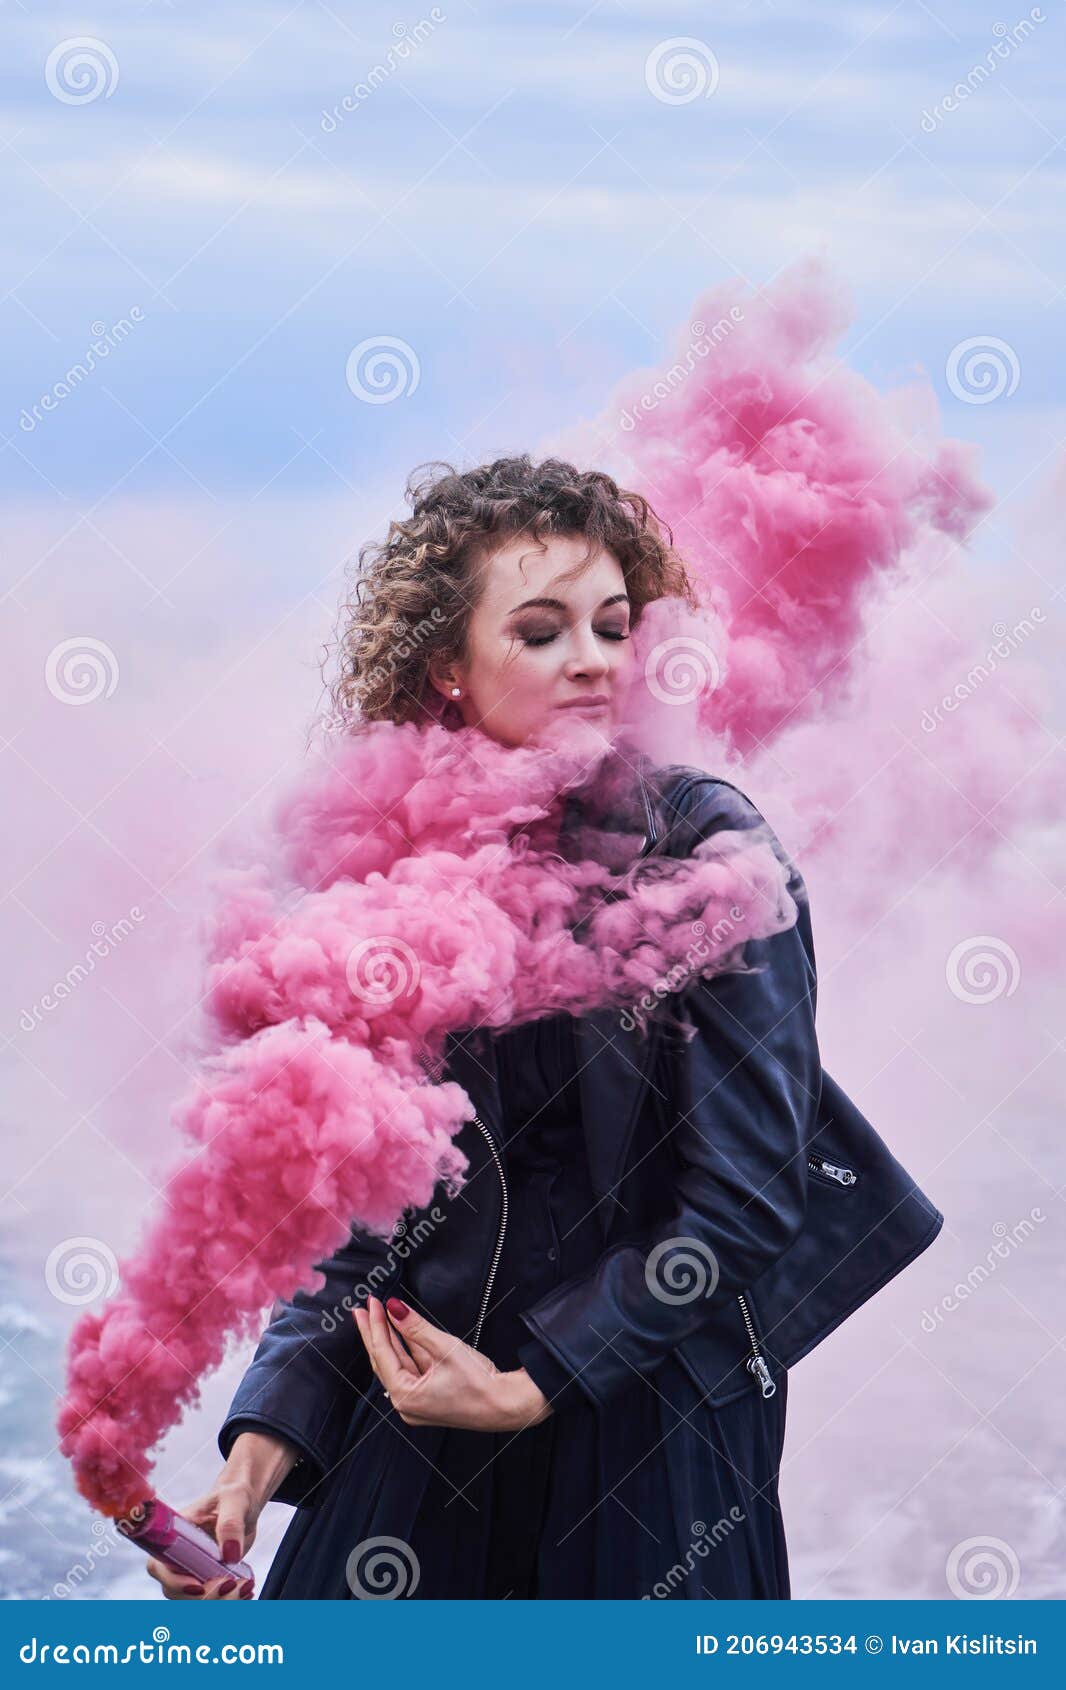 Portrait De La Fille De Mannequin Dans Des Vêtements Noirs Posant Avec Une  Bombe Fumigène Rose Photo stock - Image du extérieur, rose: 206943534